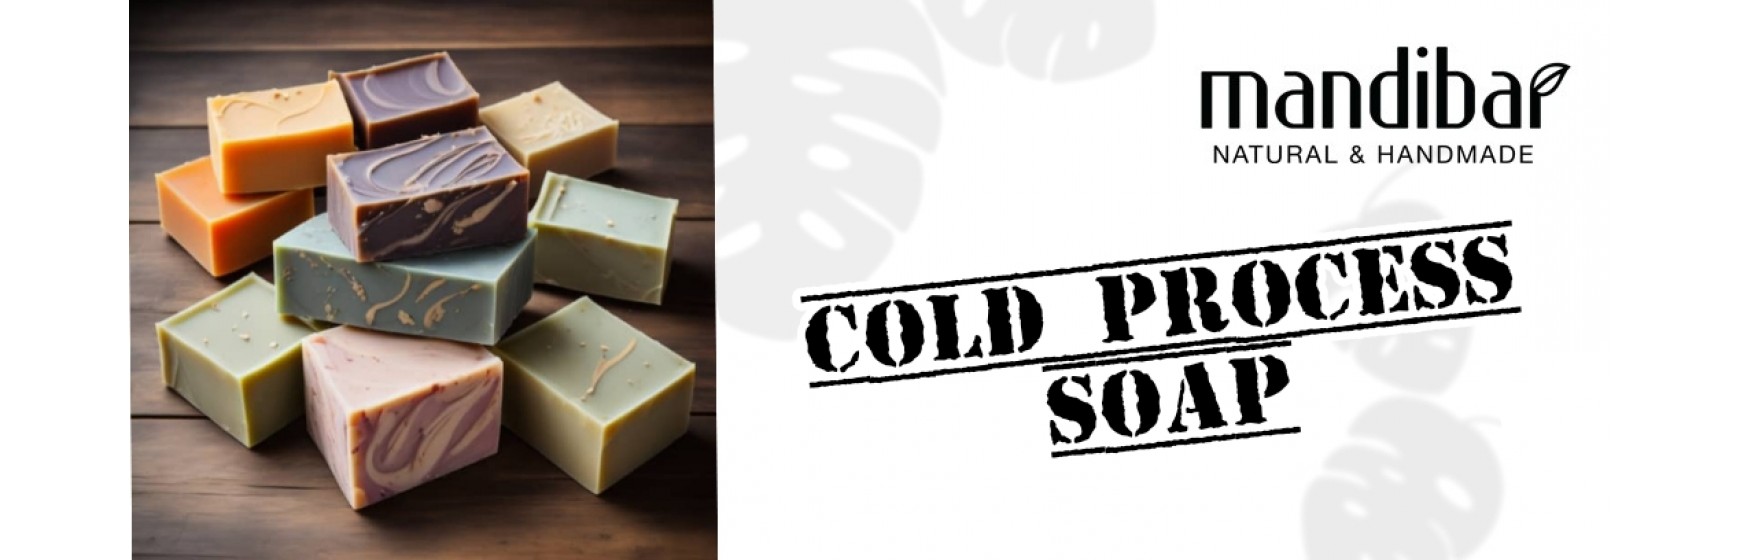 Cold Process Soap